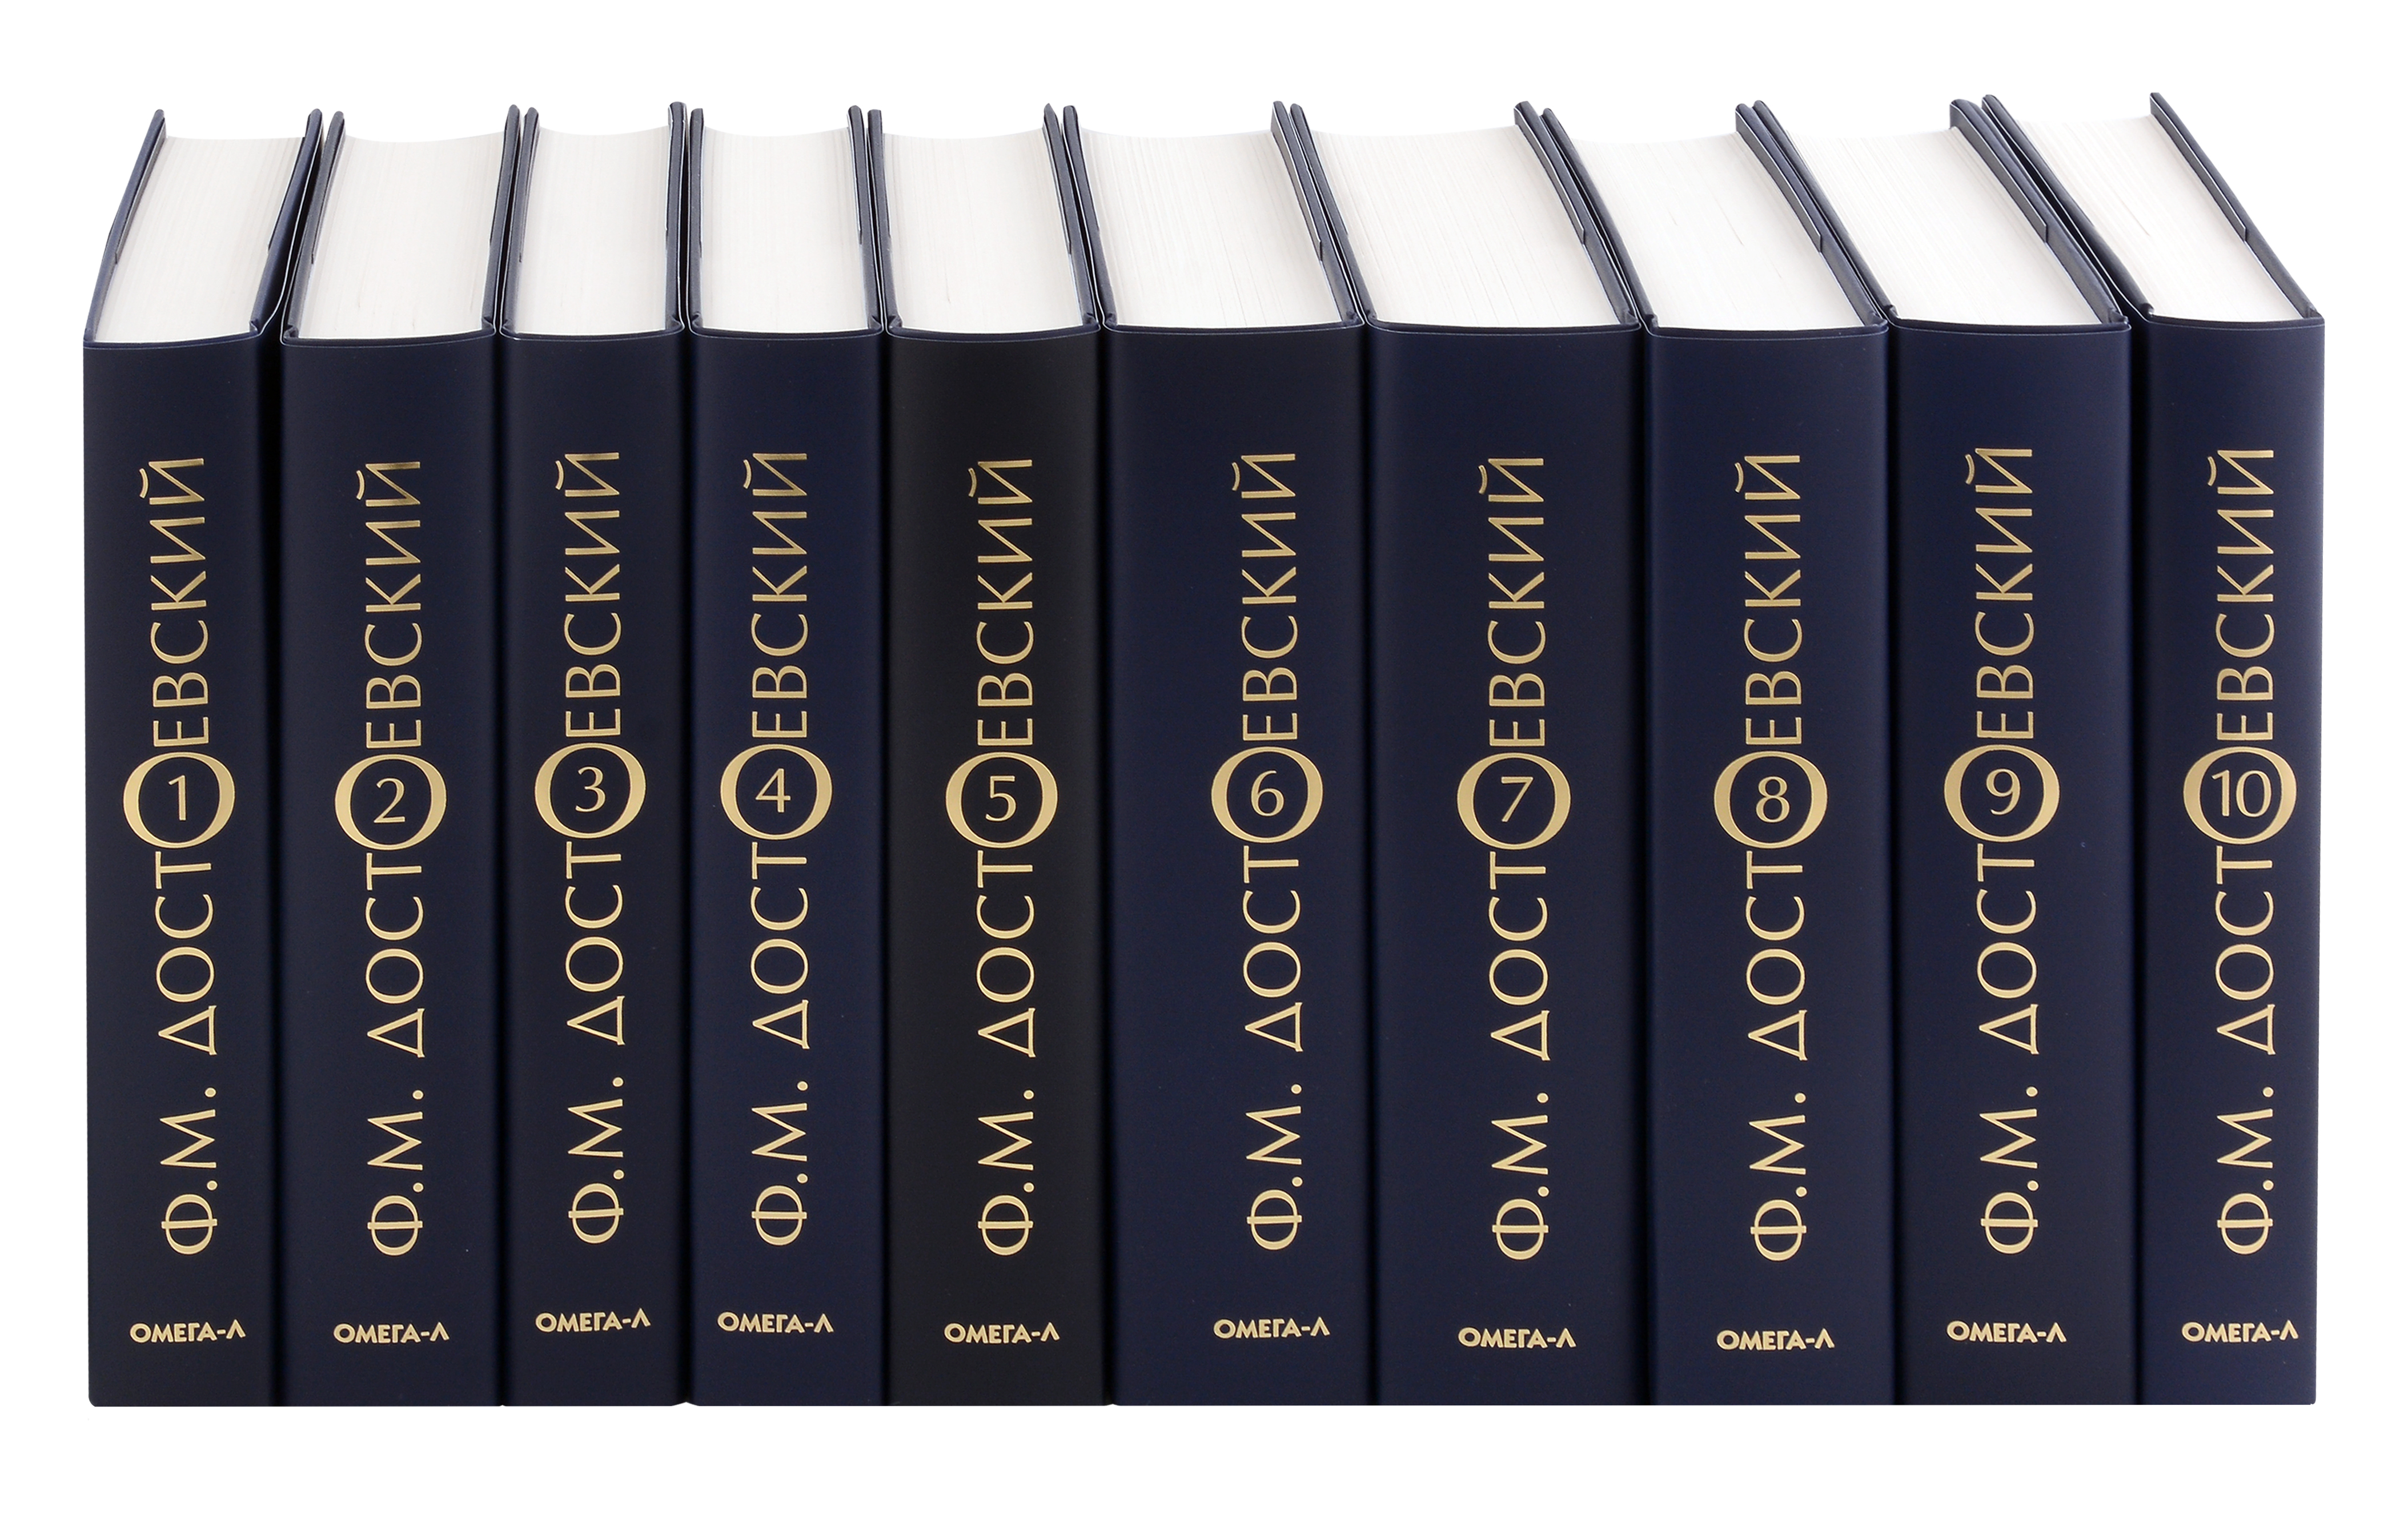 

Комплект Достоевский. Собрание сочинений в десяти томах (комплект из 10-ти книг)